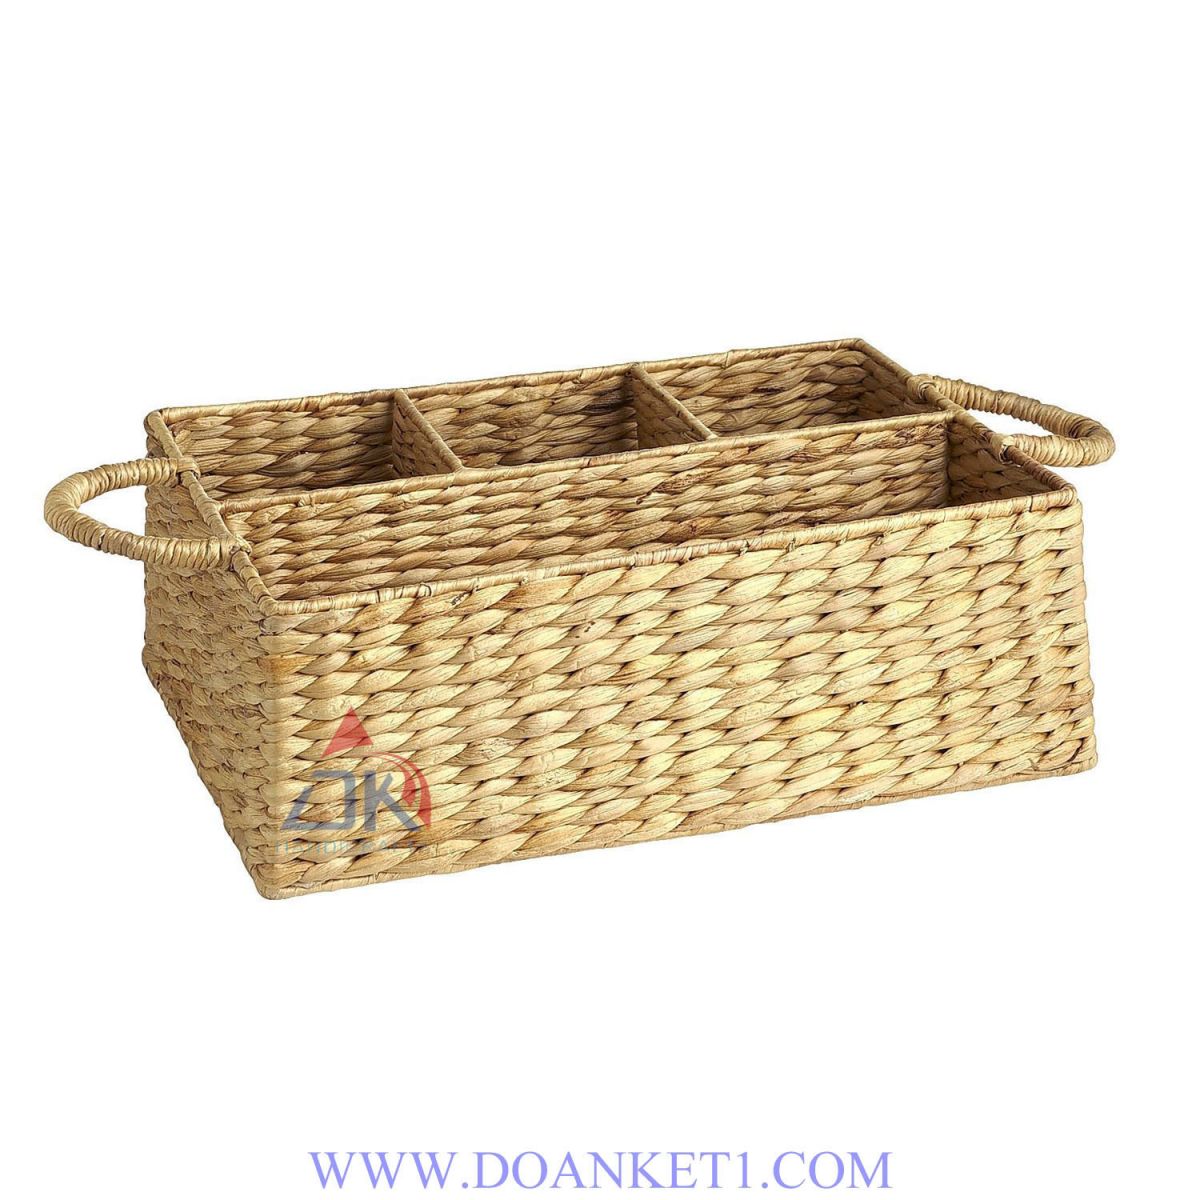 Water Hyacinth Storage Basket # DK352